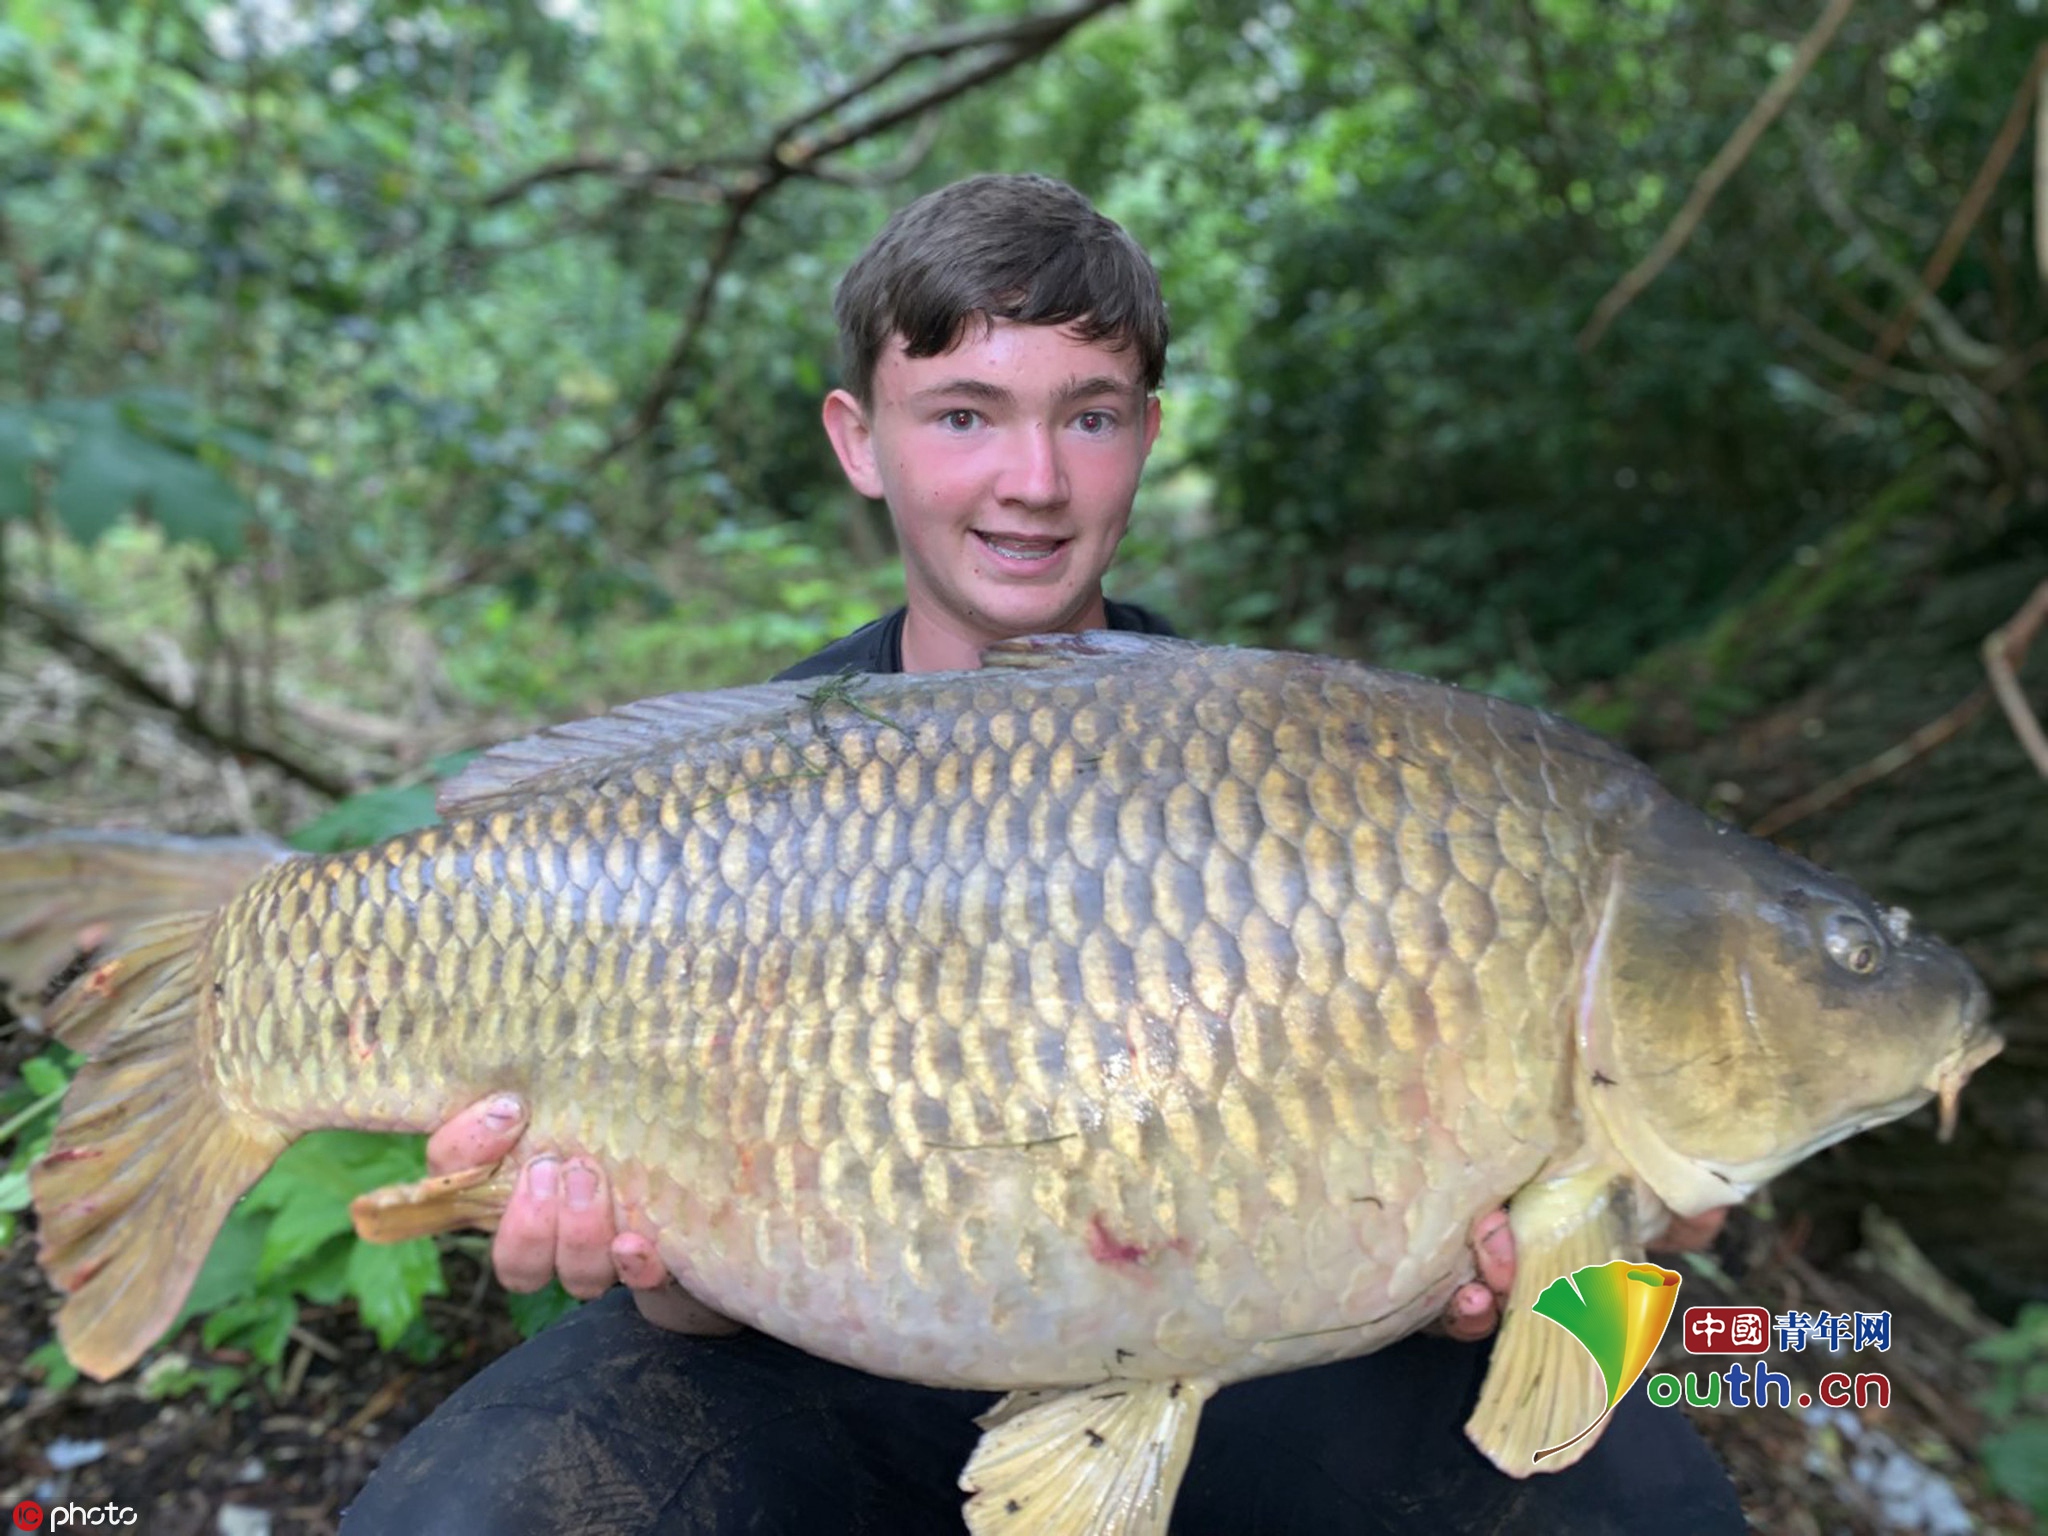 英国15岁男孩钓到24斤巨型鲤鱼 为近两个世纪最大